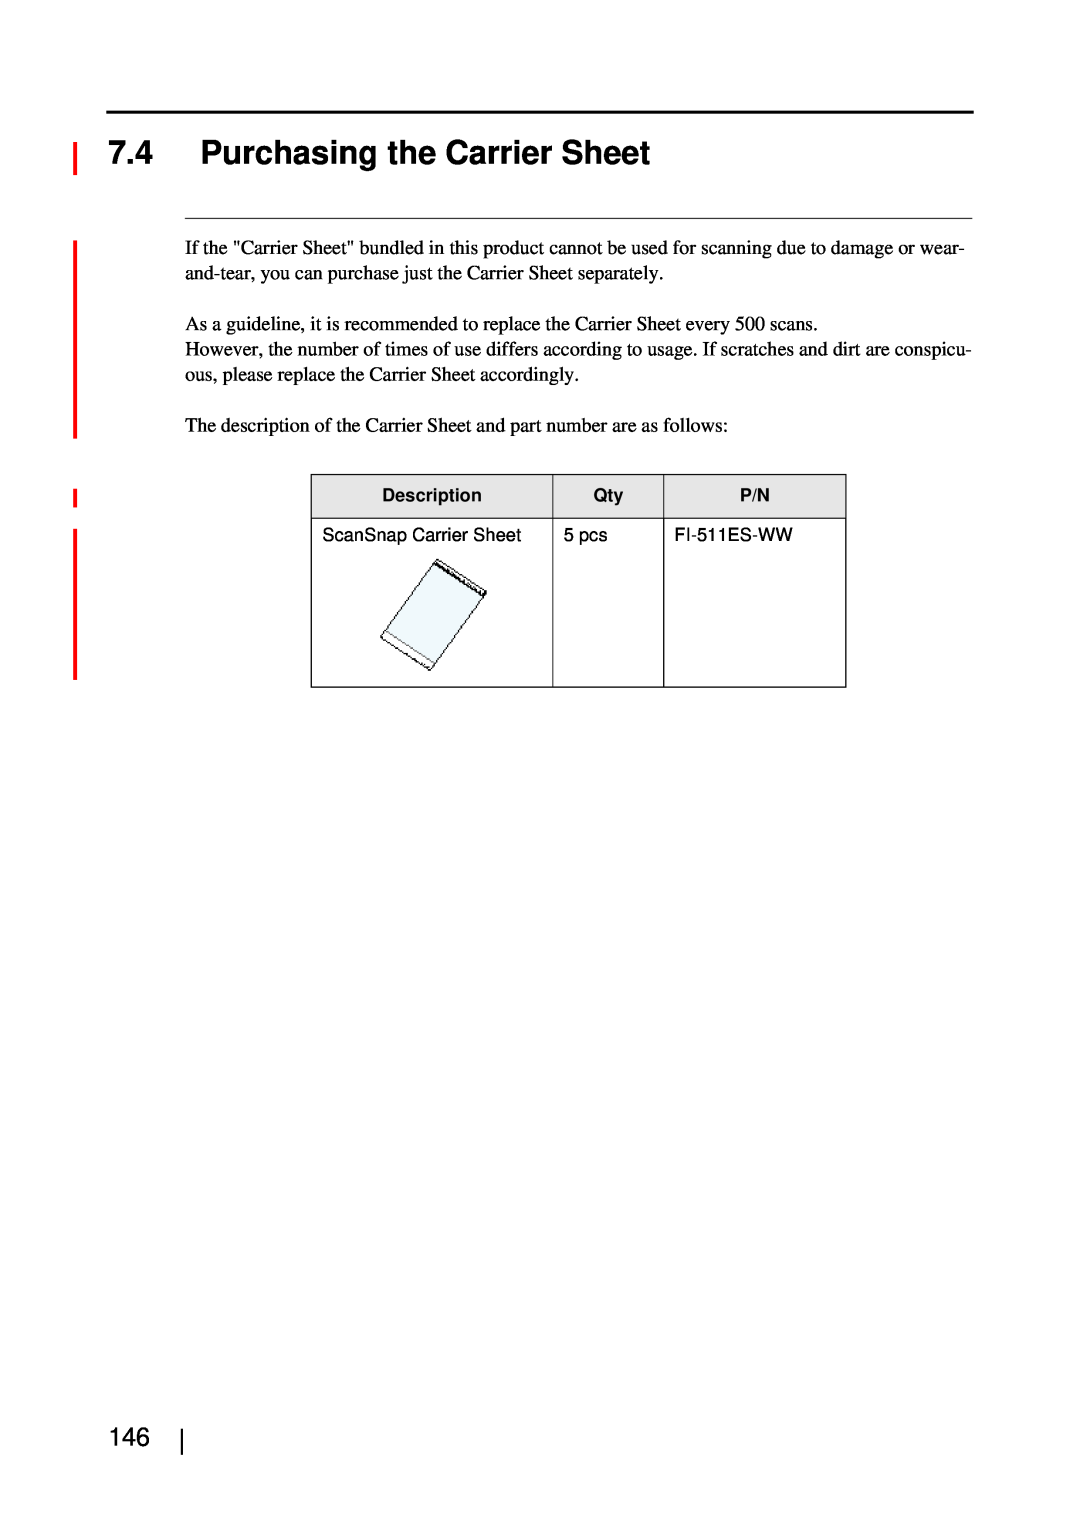 Fujitsu S510M manual Purchasing the Carrier Sheet 